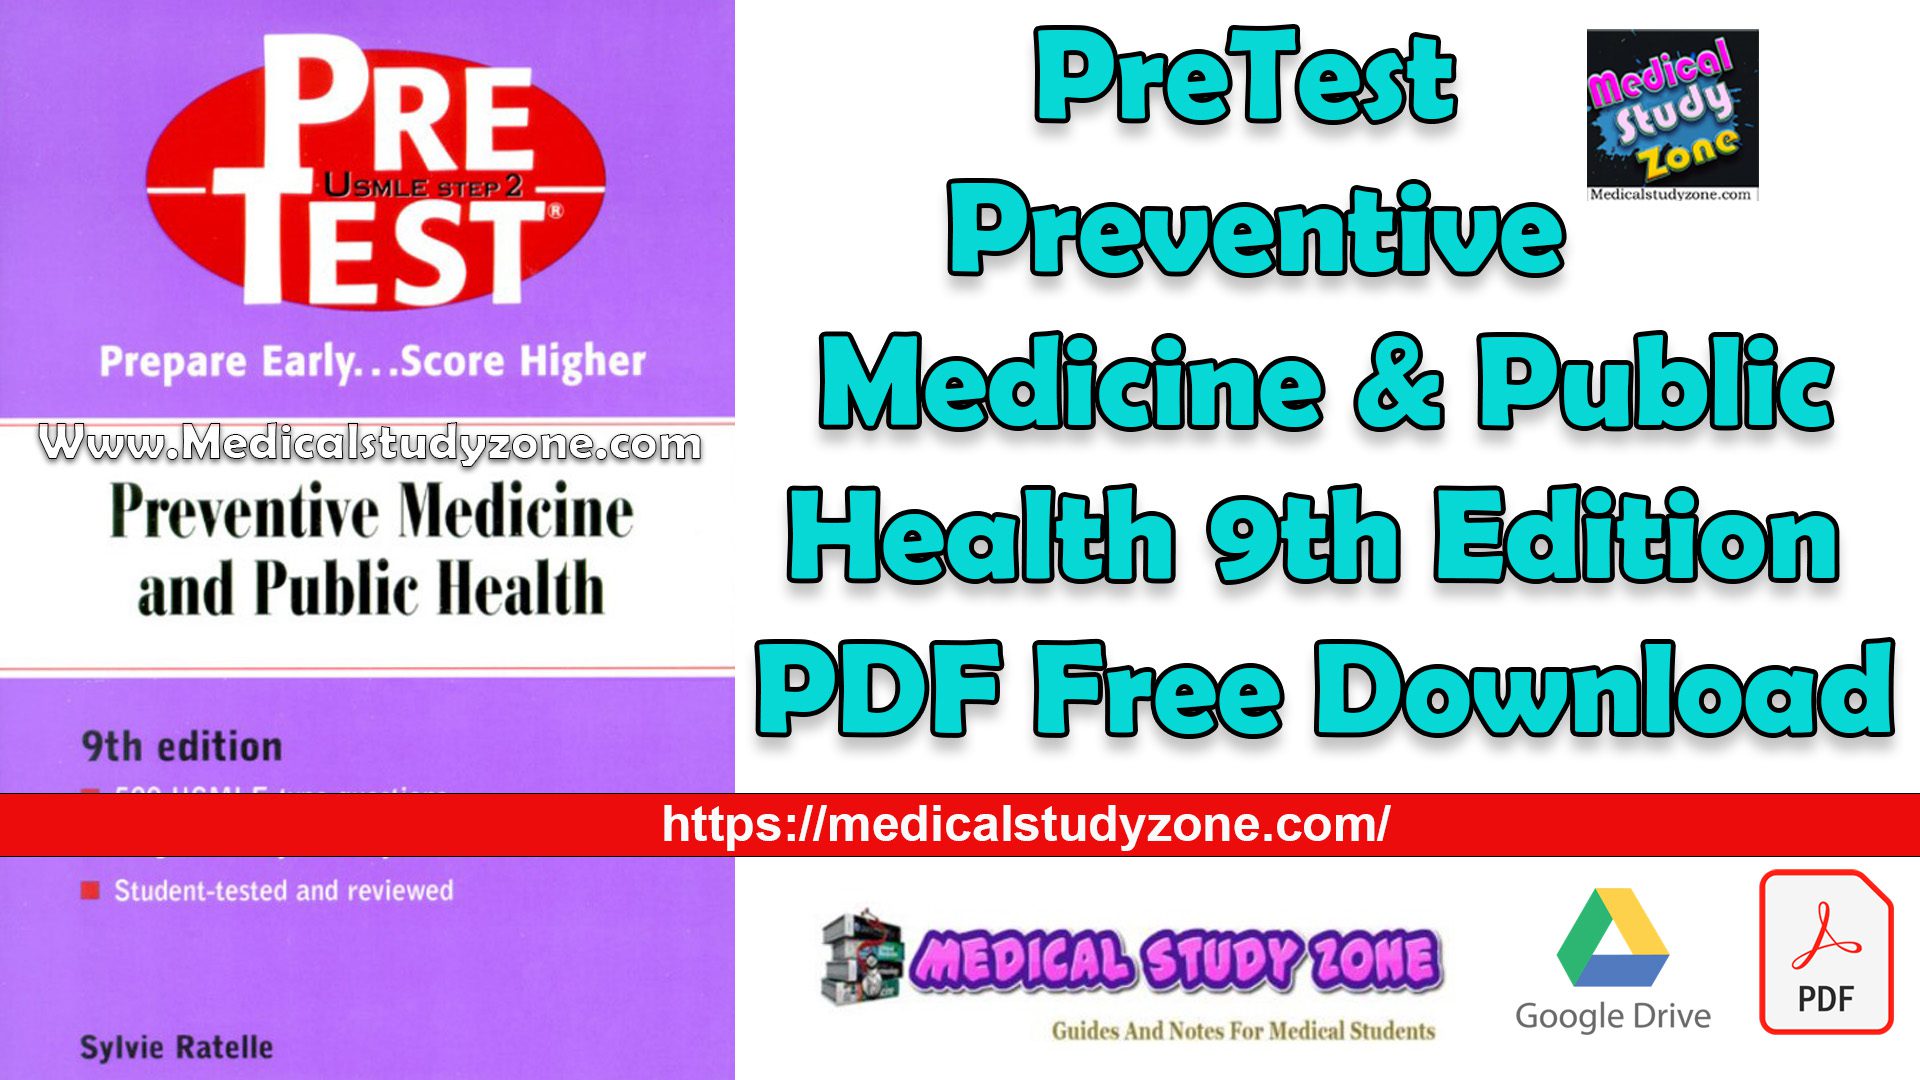 PreTest Preventive Medicine & Public Health 9th Edition PDF Free Download